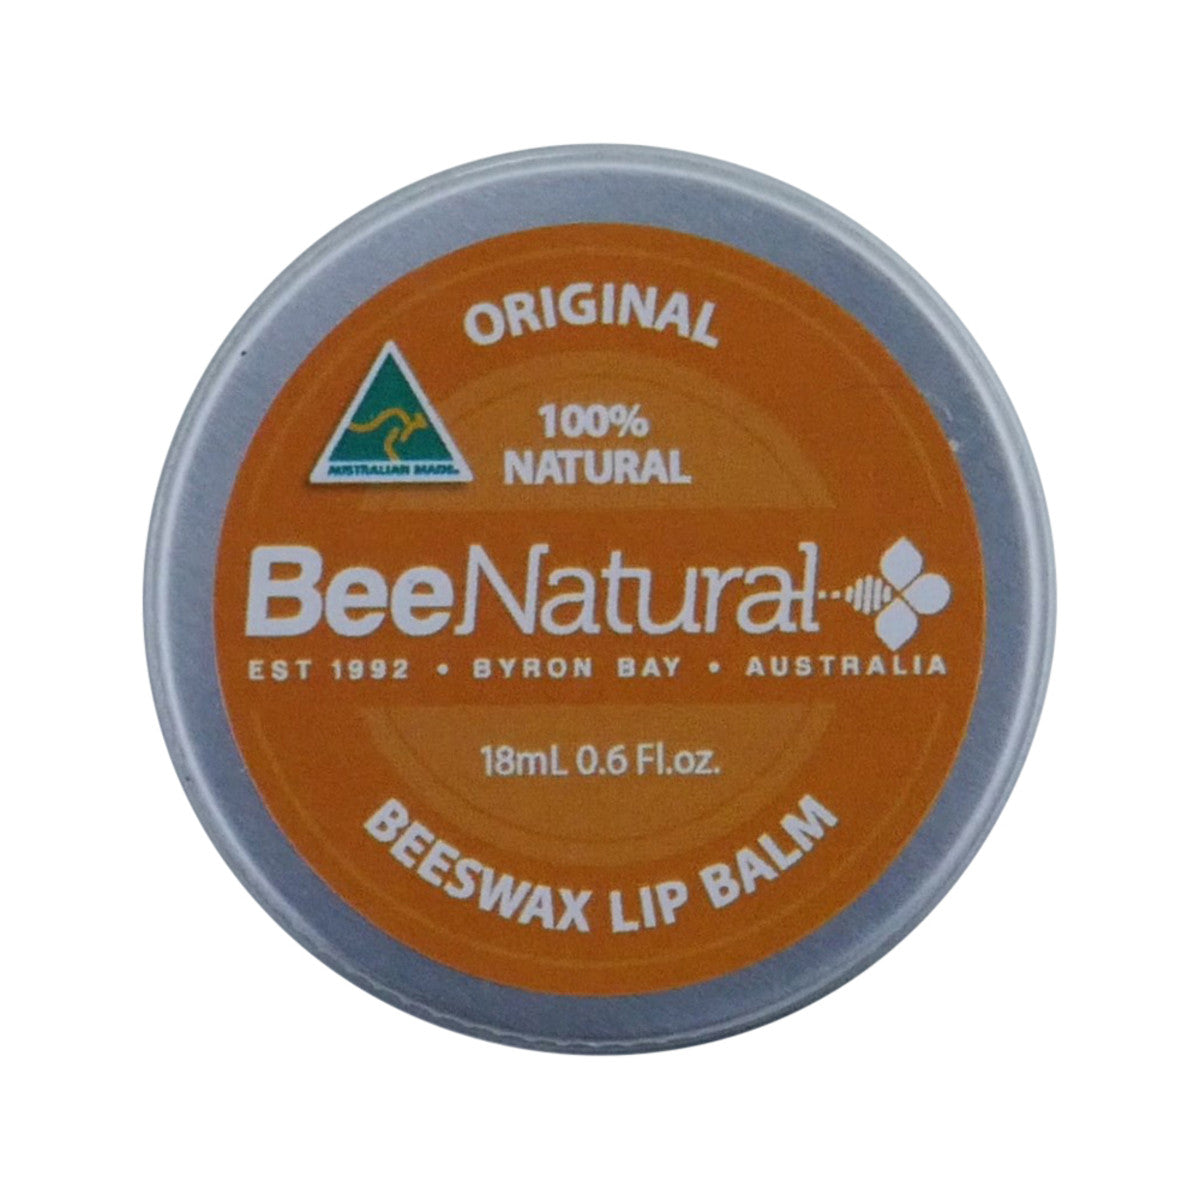 Bee Natural - Lip Balm Tin Original